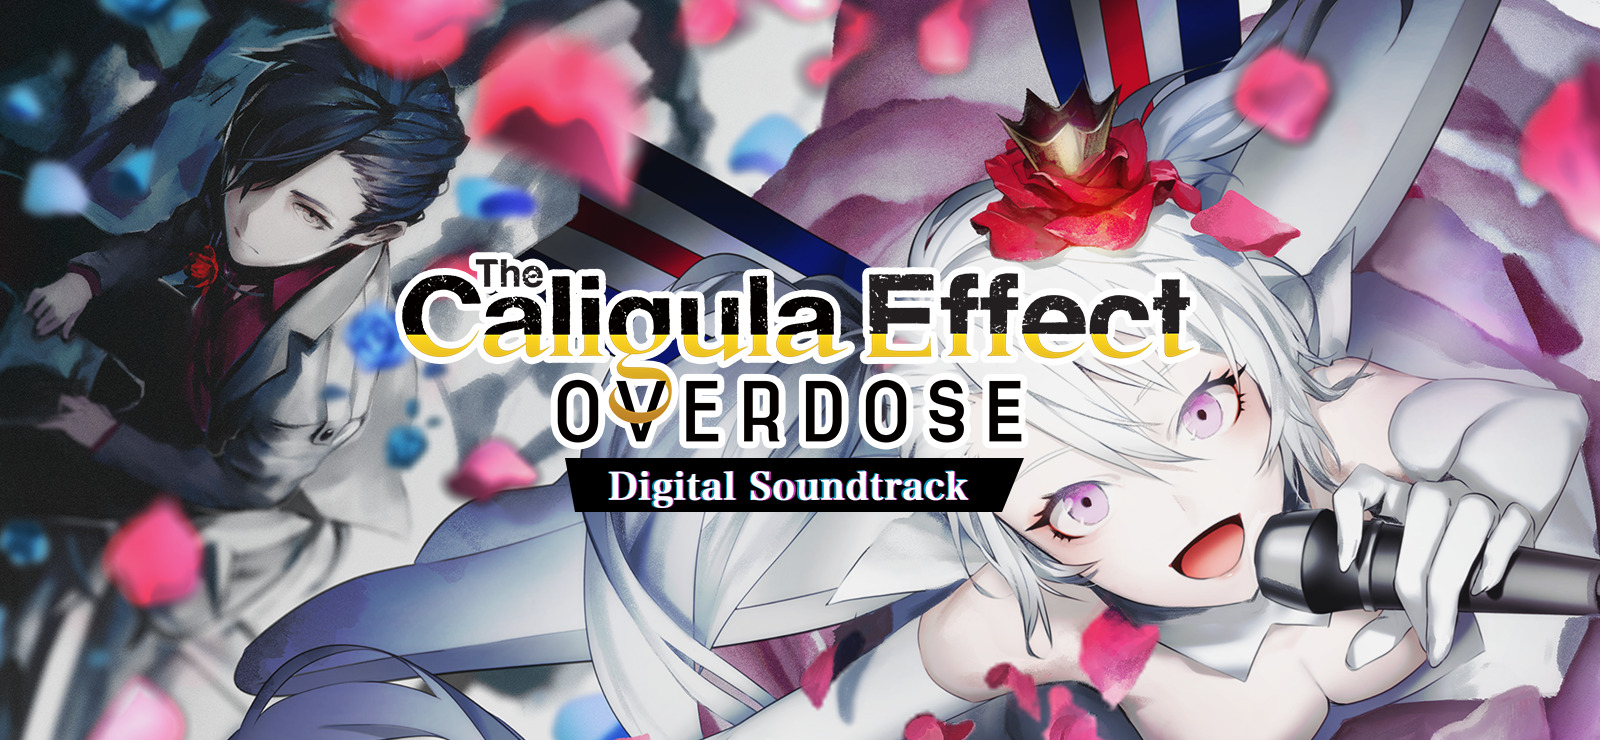 The Caligula Effect: Overdose - Digital Soundtrack DLC Steam CD Key [USD 4.36]